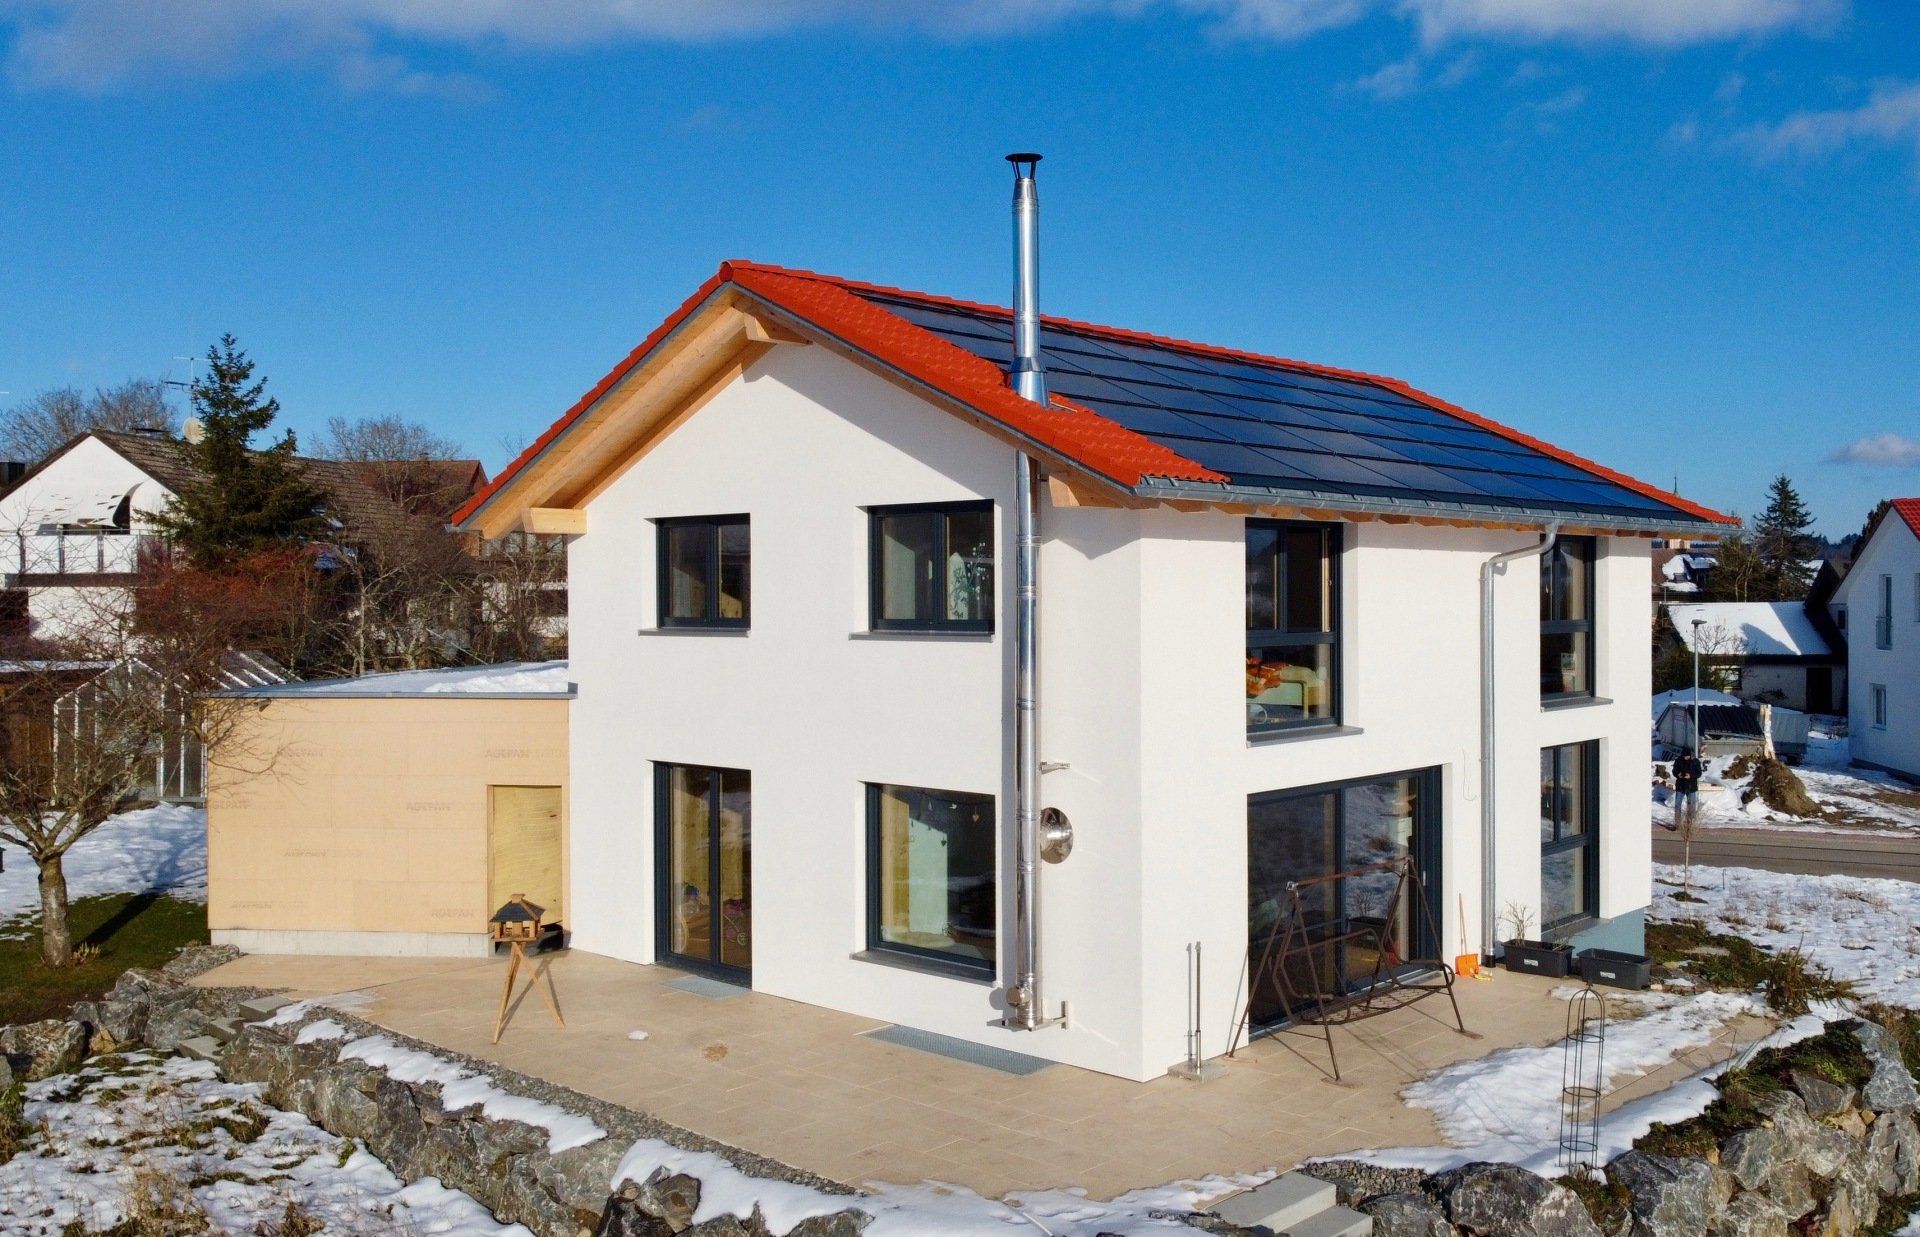 Öko-Holzhaus vom Architekten gestalten lassen